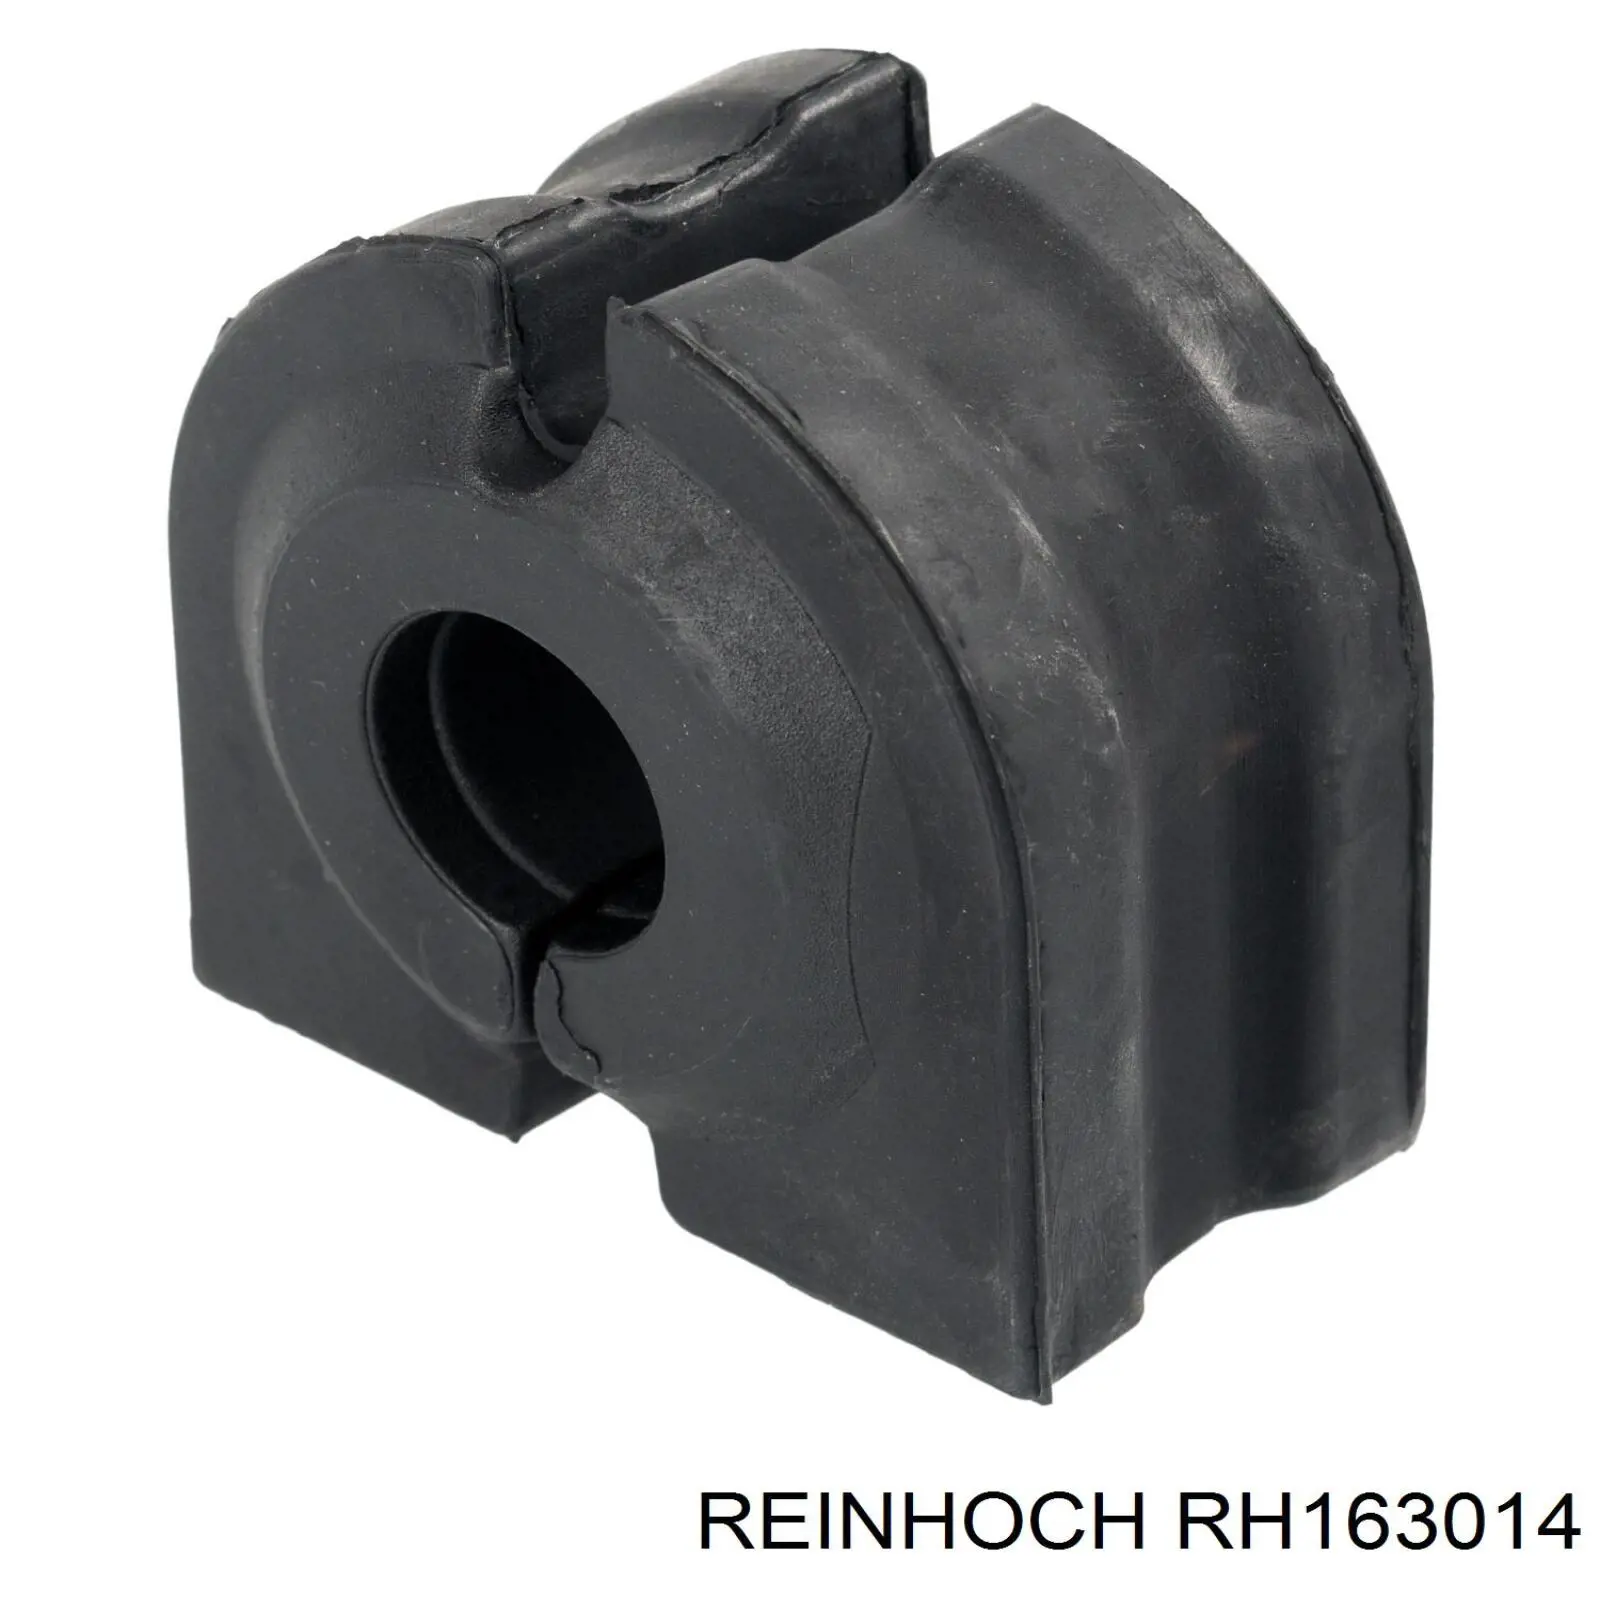 RH163014 Reinhoch casquillo de barra estabilizadora delantera